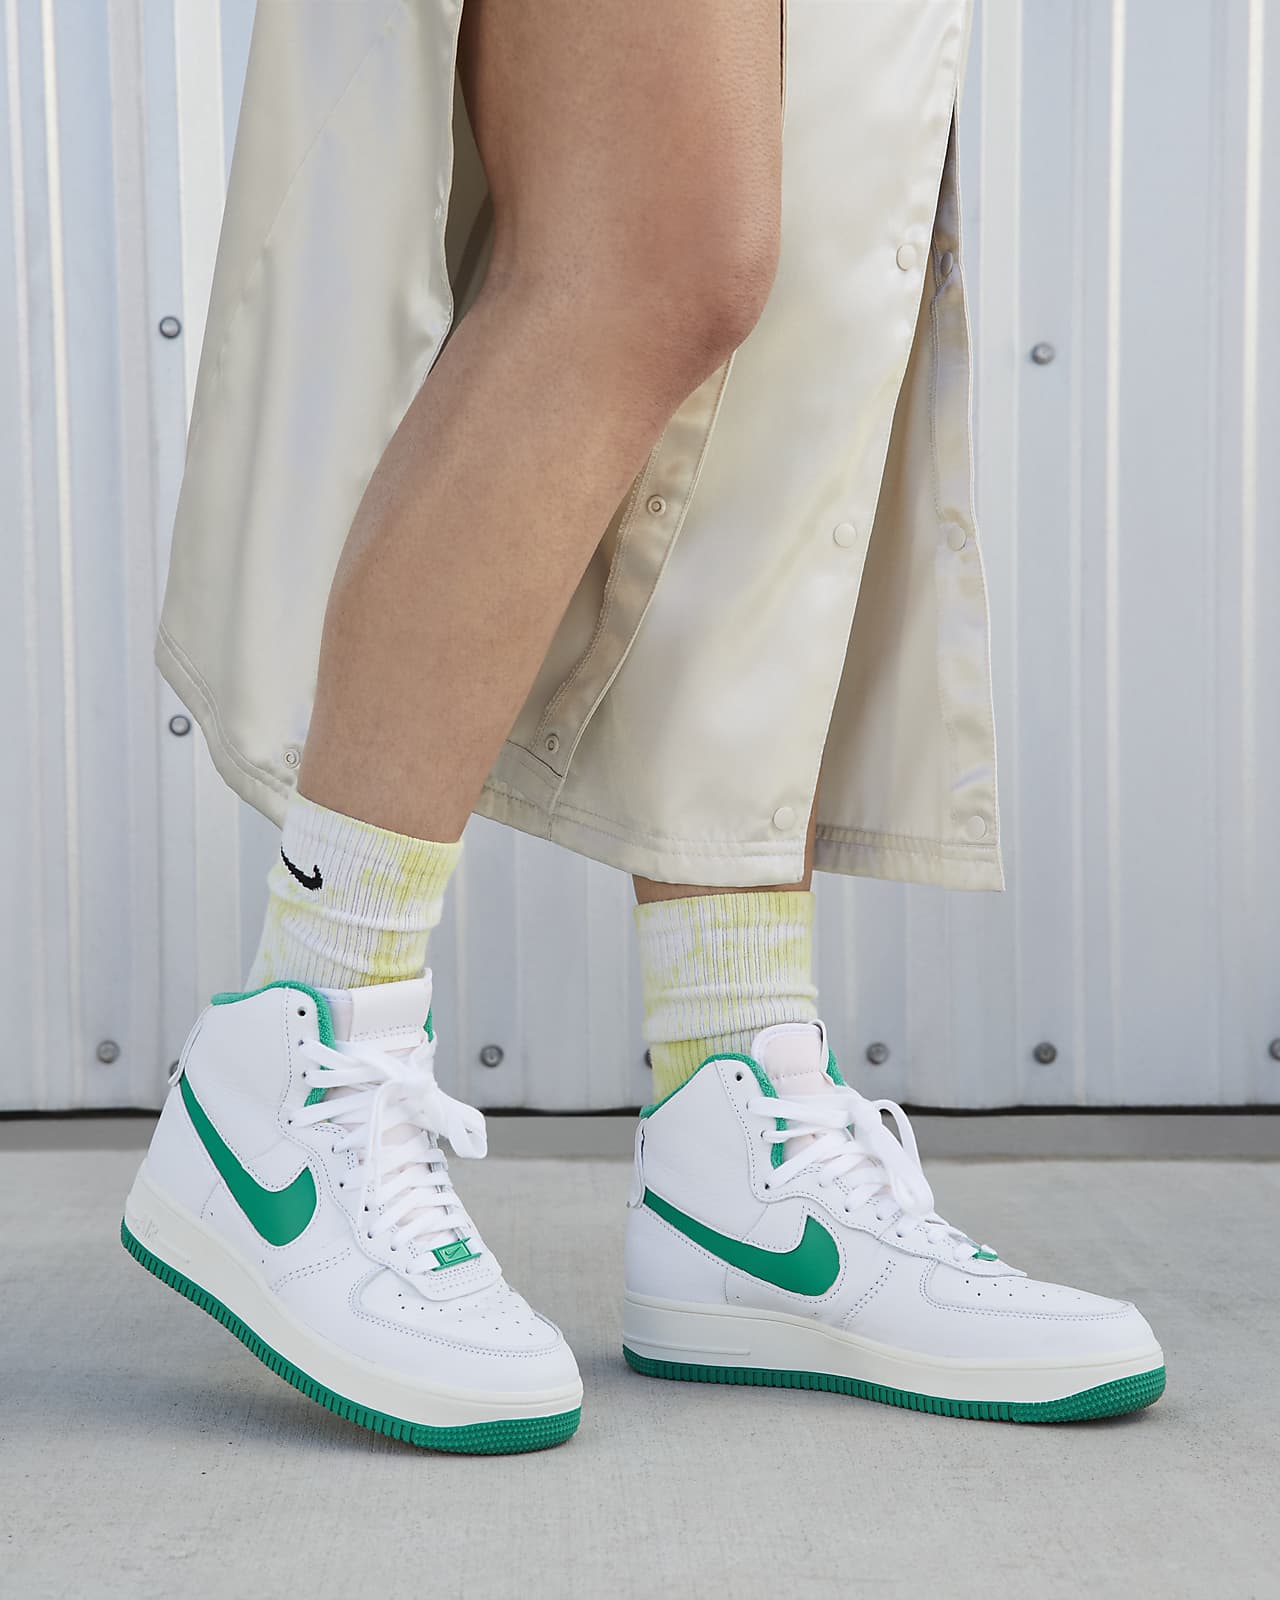 Nike Air Force 1 Mujer Blancas, Compra Zapatillas